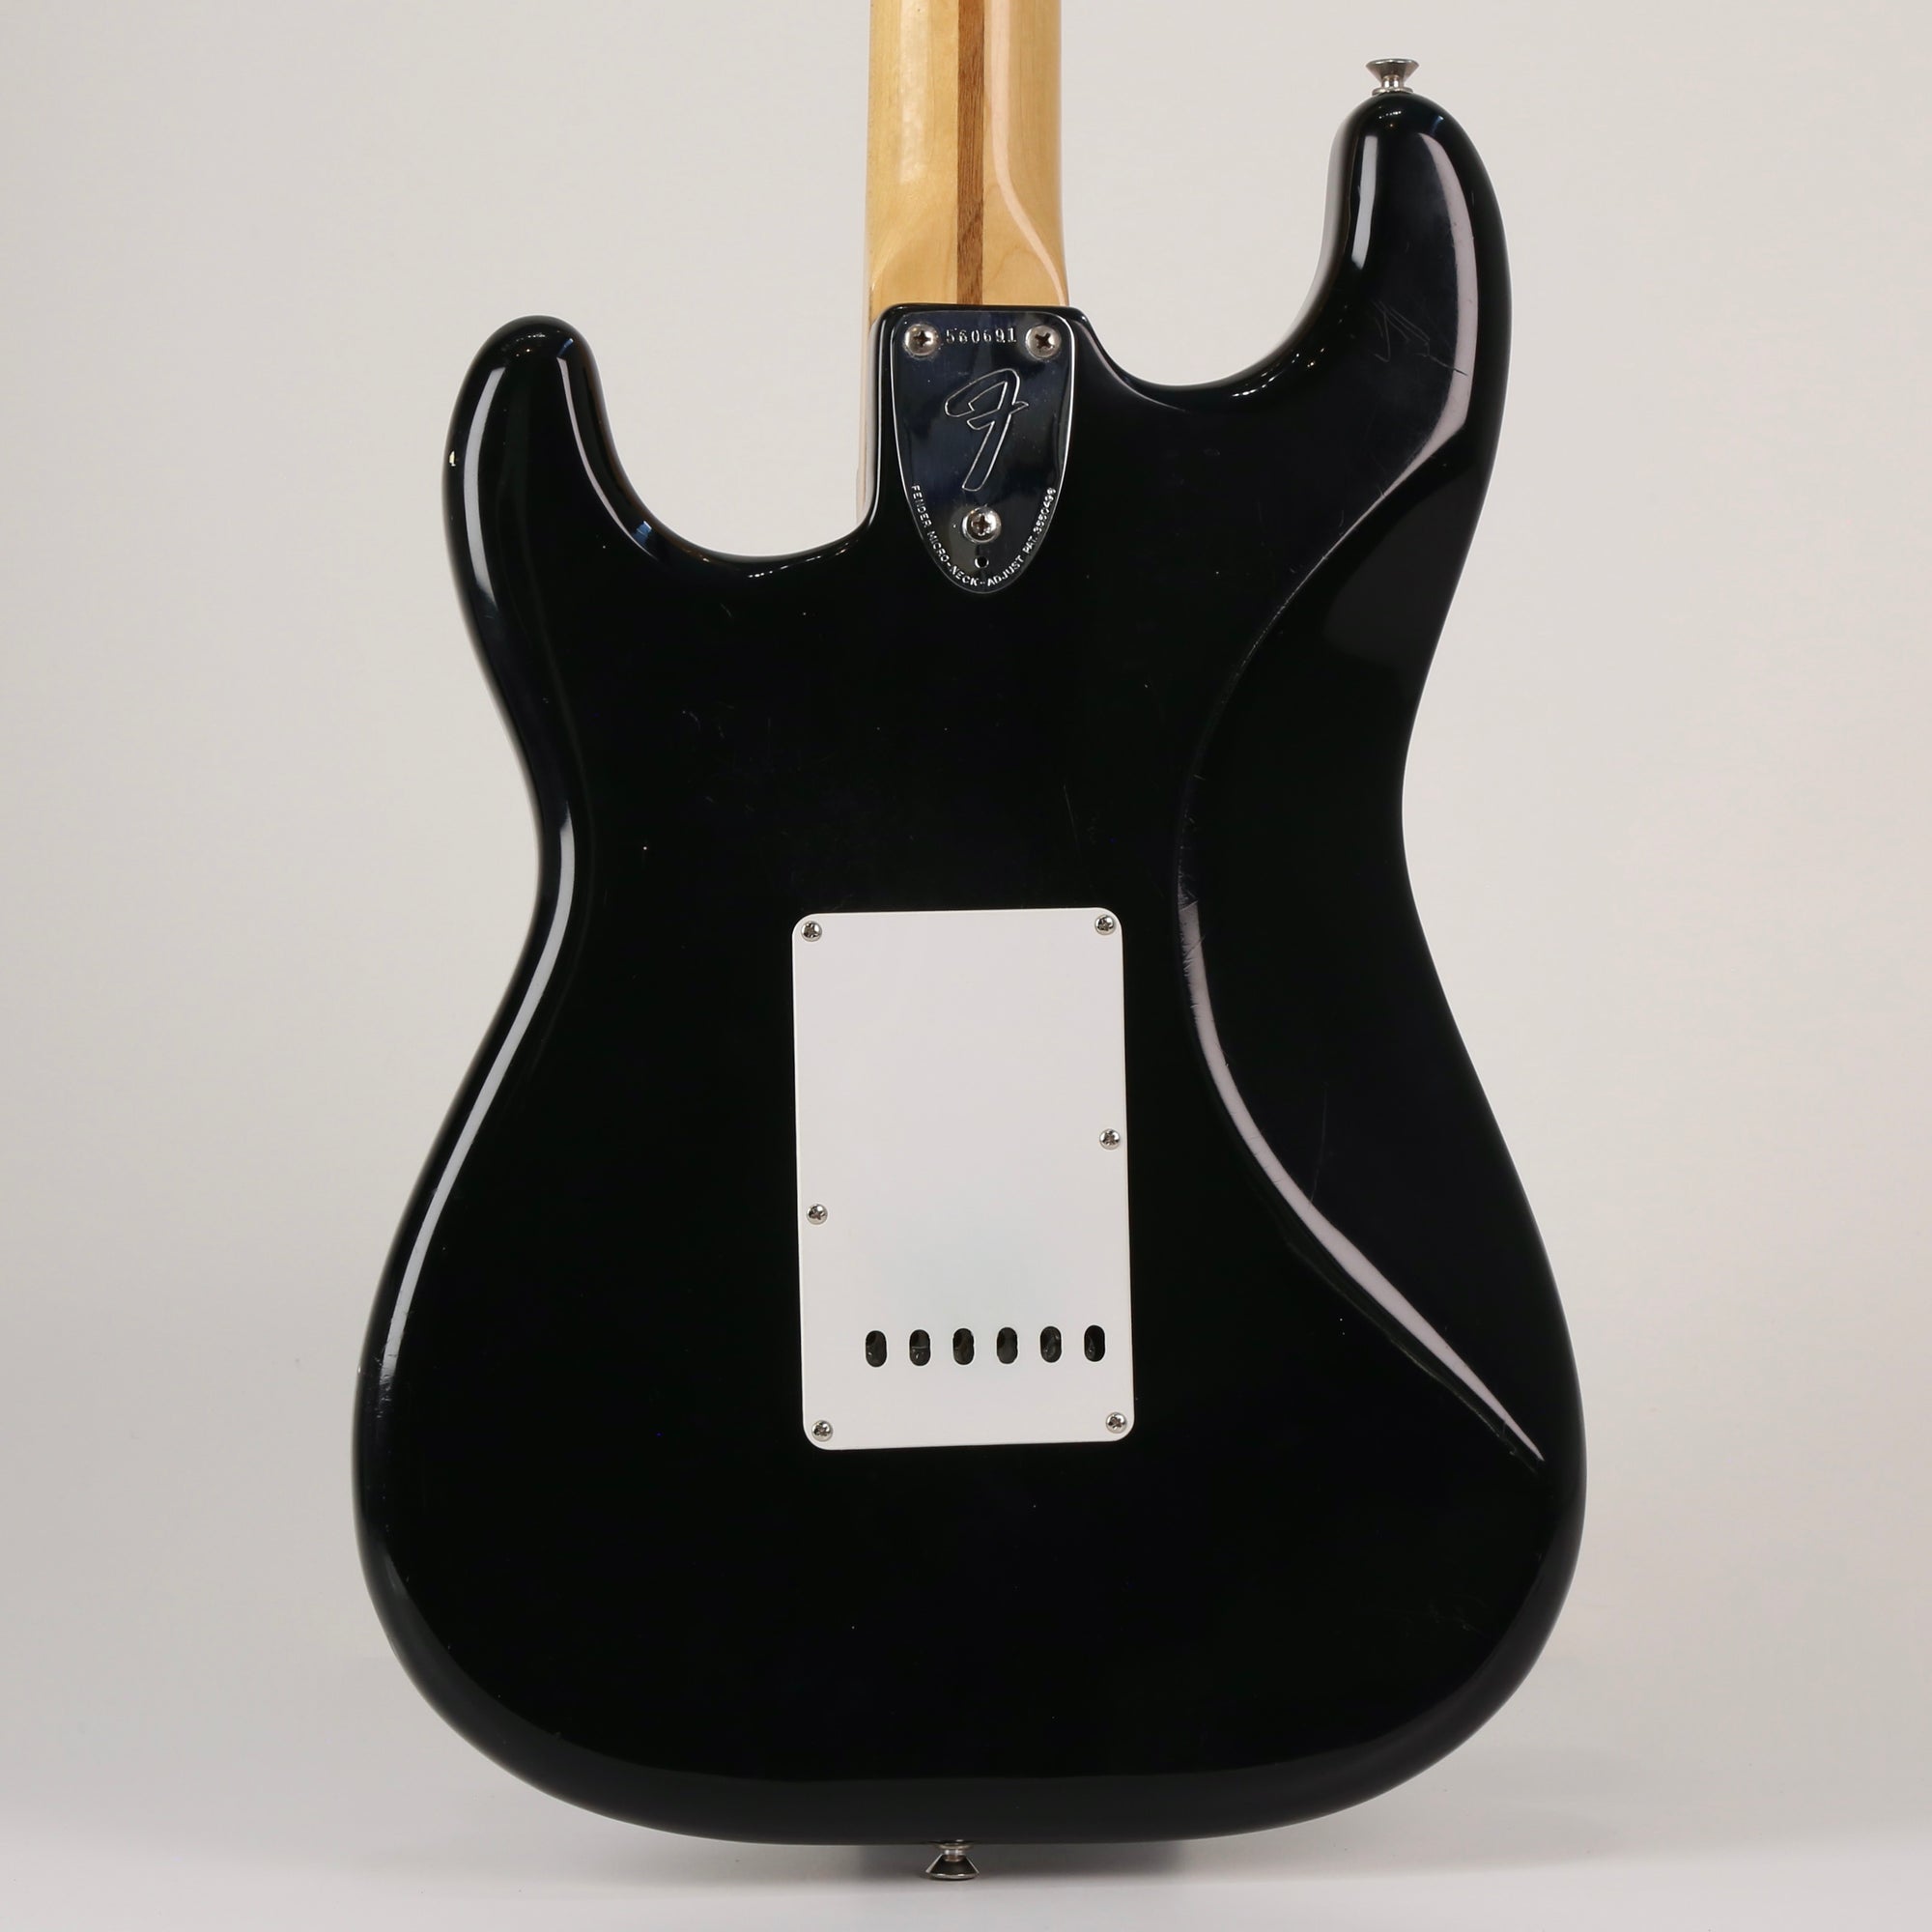 1975 Fender Stratocaster